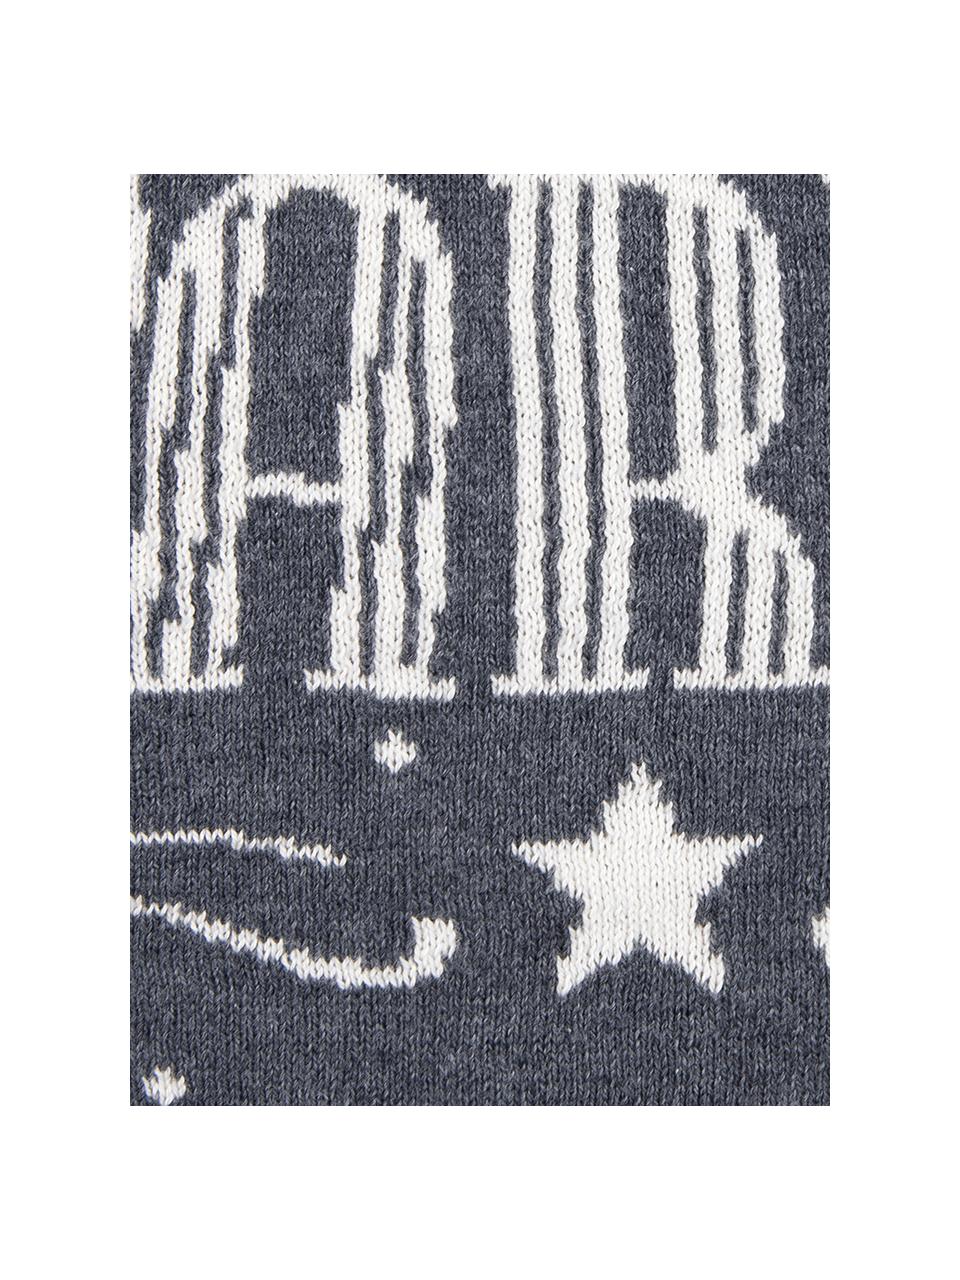 Kissenhülle Sparkle in Grau/Weiss mit Schriftzug, Baumwolle, Grau, Cremeweiss, 40 x 40 cm